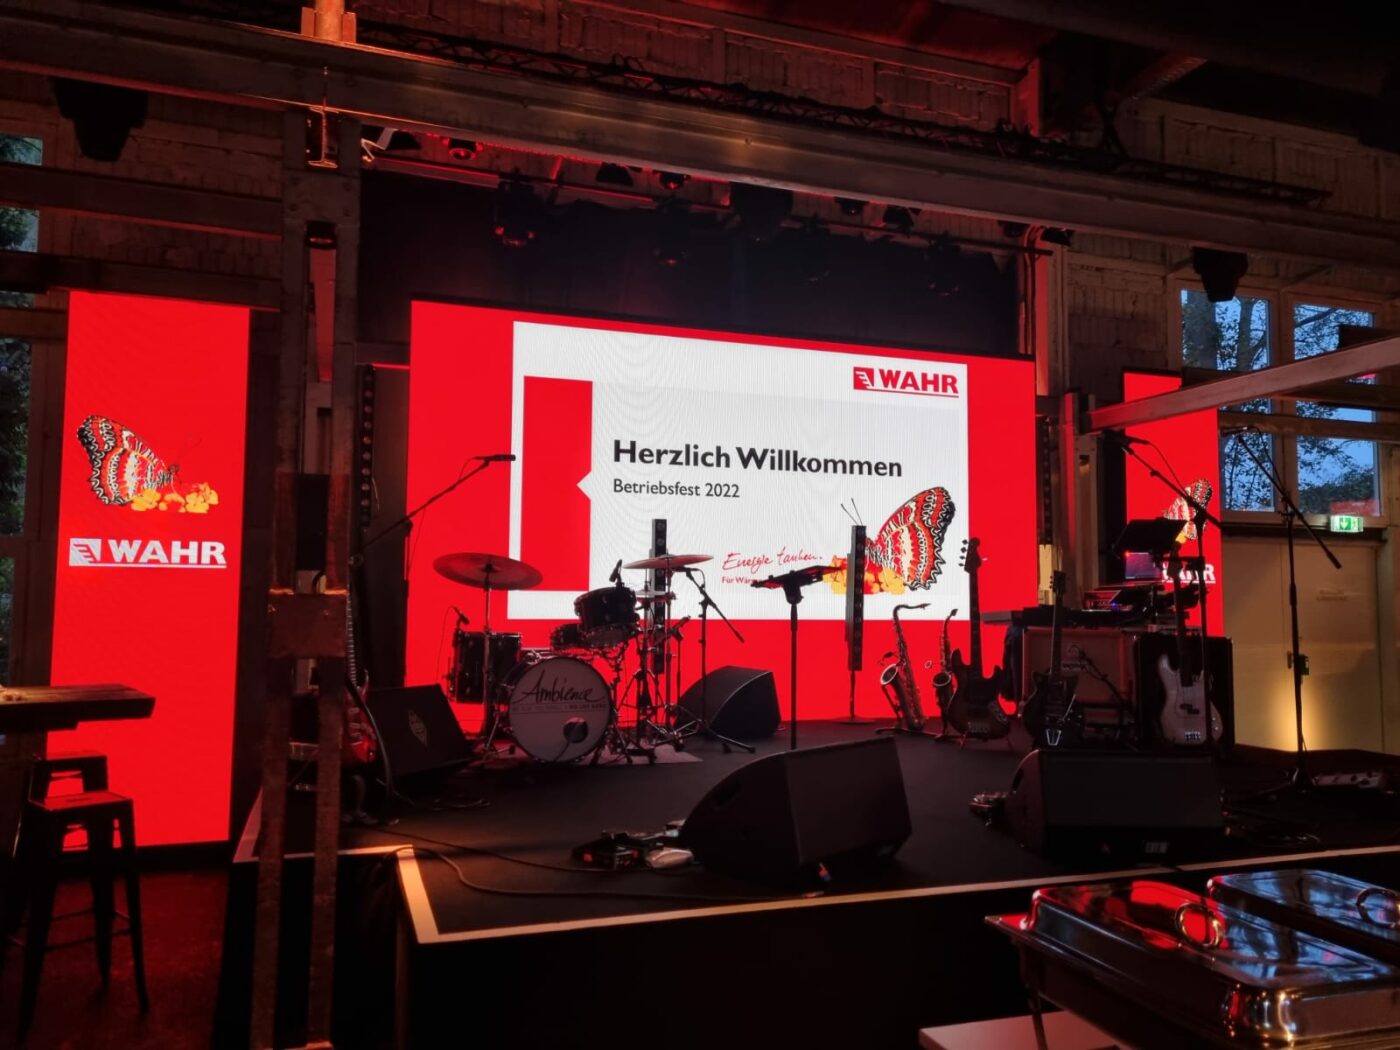 Fritz Wahr Energie Betriebsfest 2022 Bühne mit Musikinstrumenten und PowerPoint-Präsentation